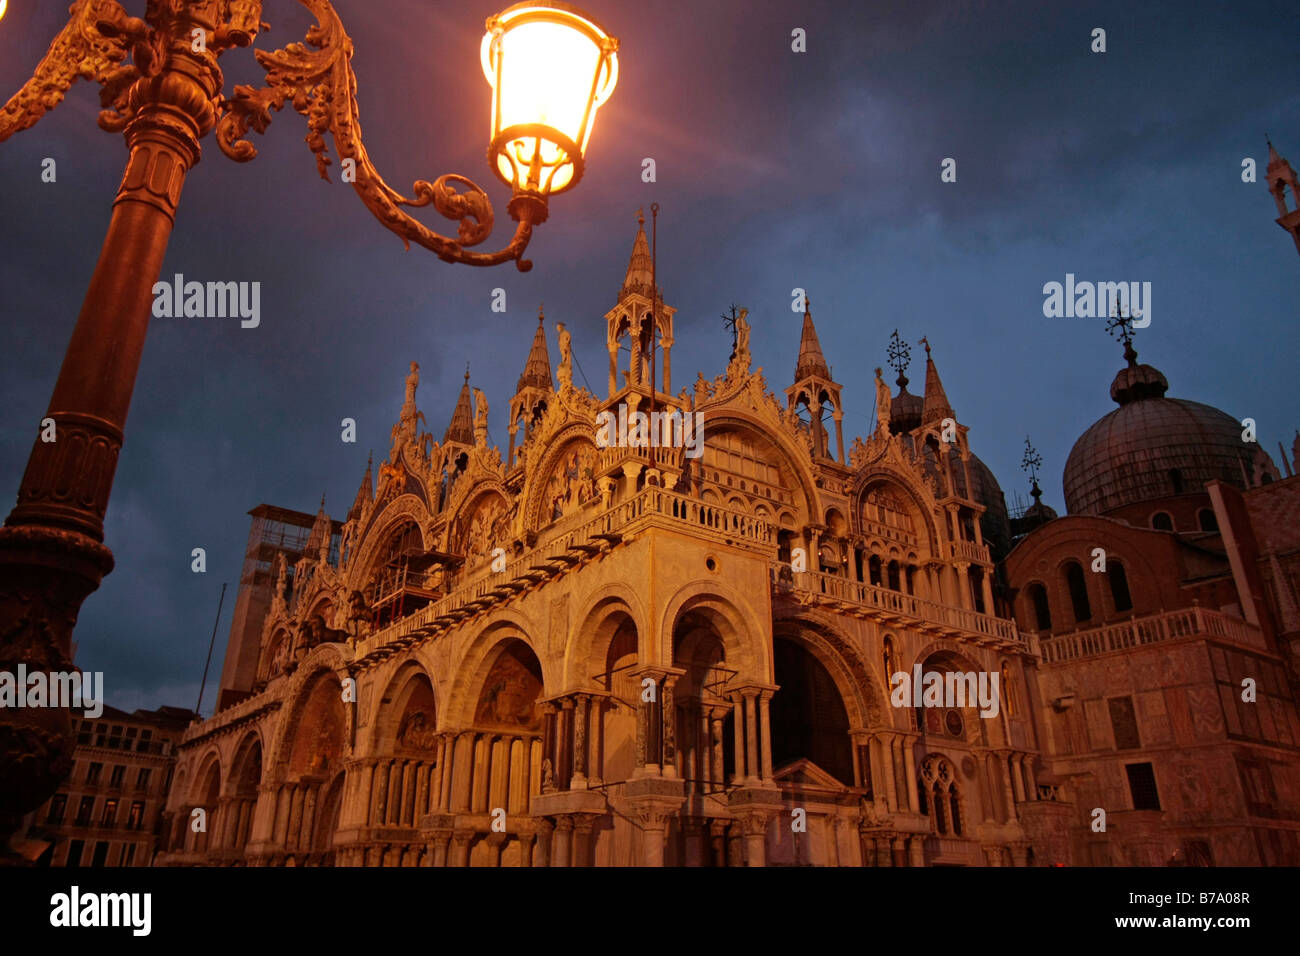 Illuminated St. Mark's Basilica in Venice, Italy, Europe Stock Photo